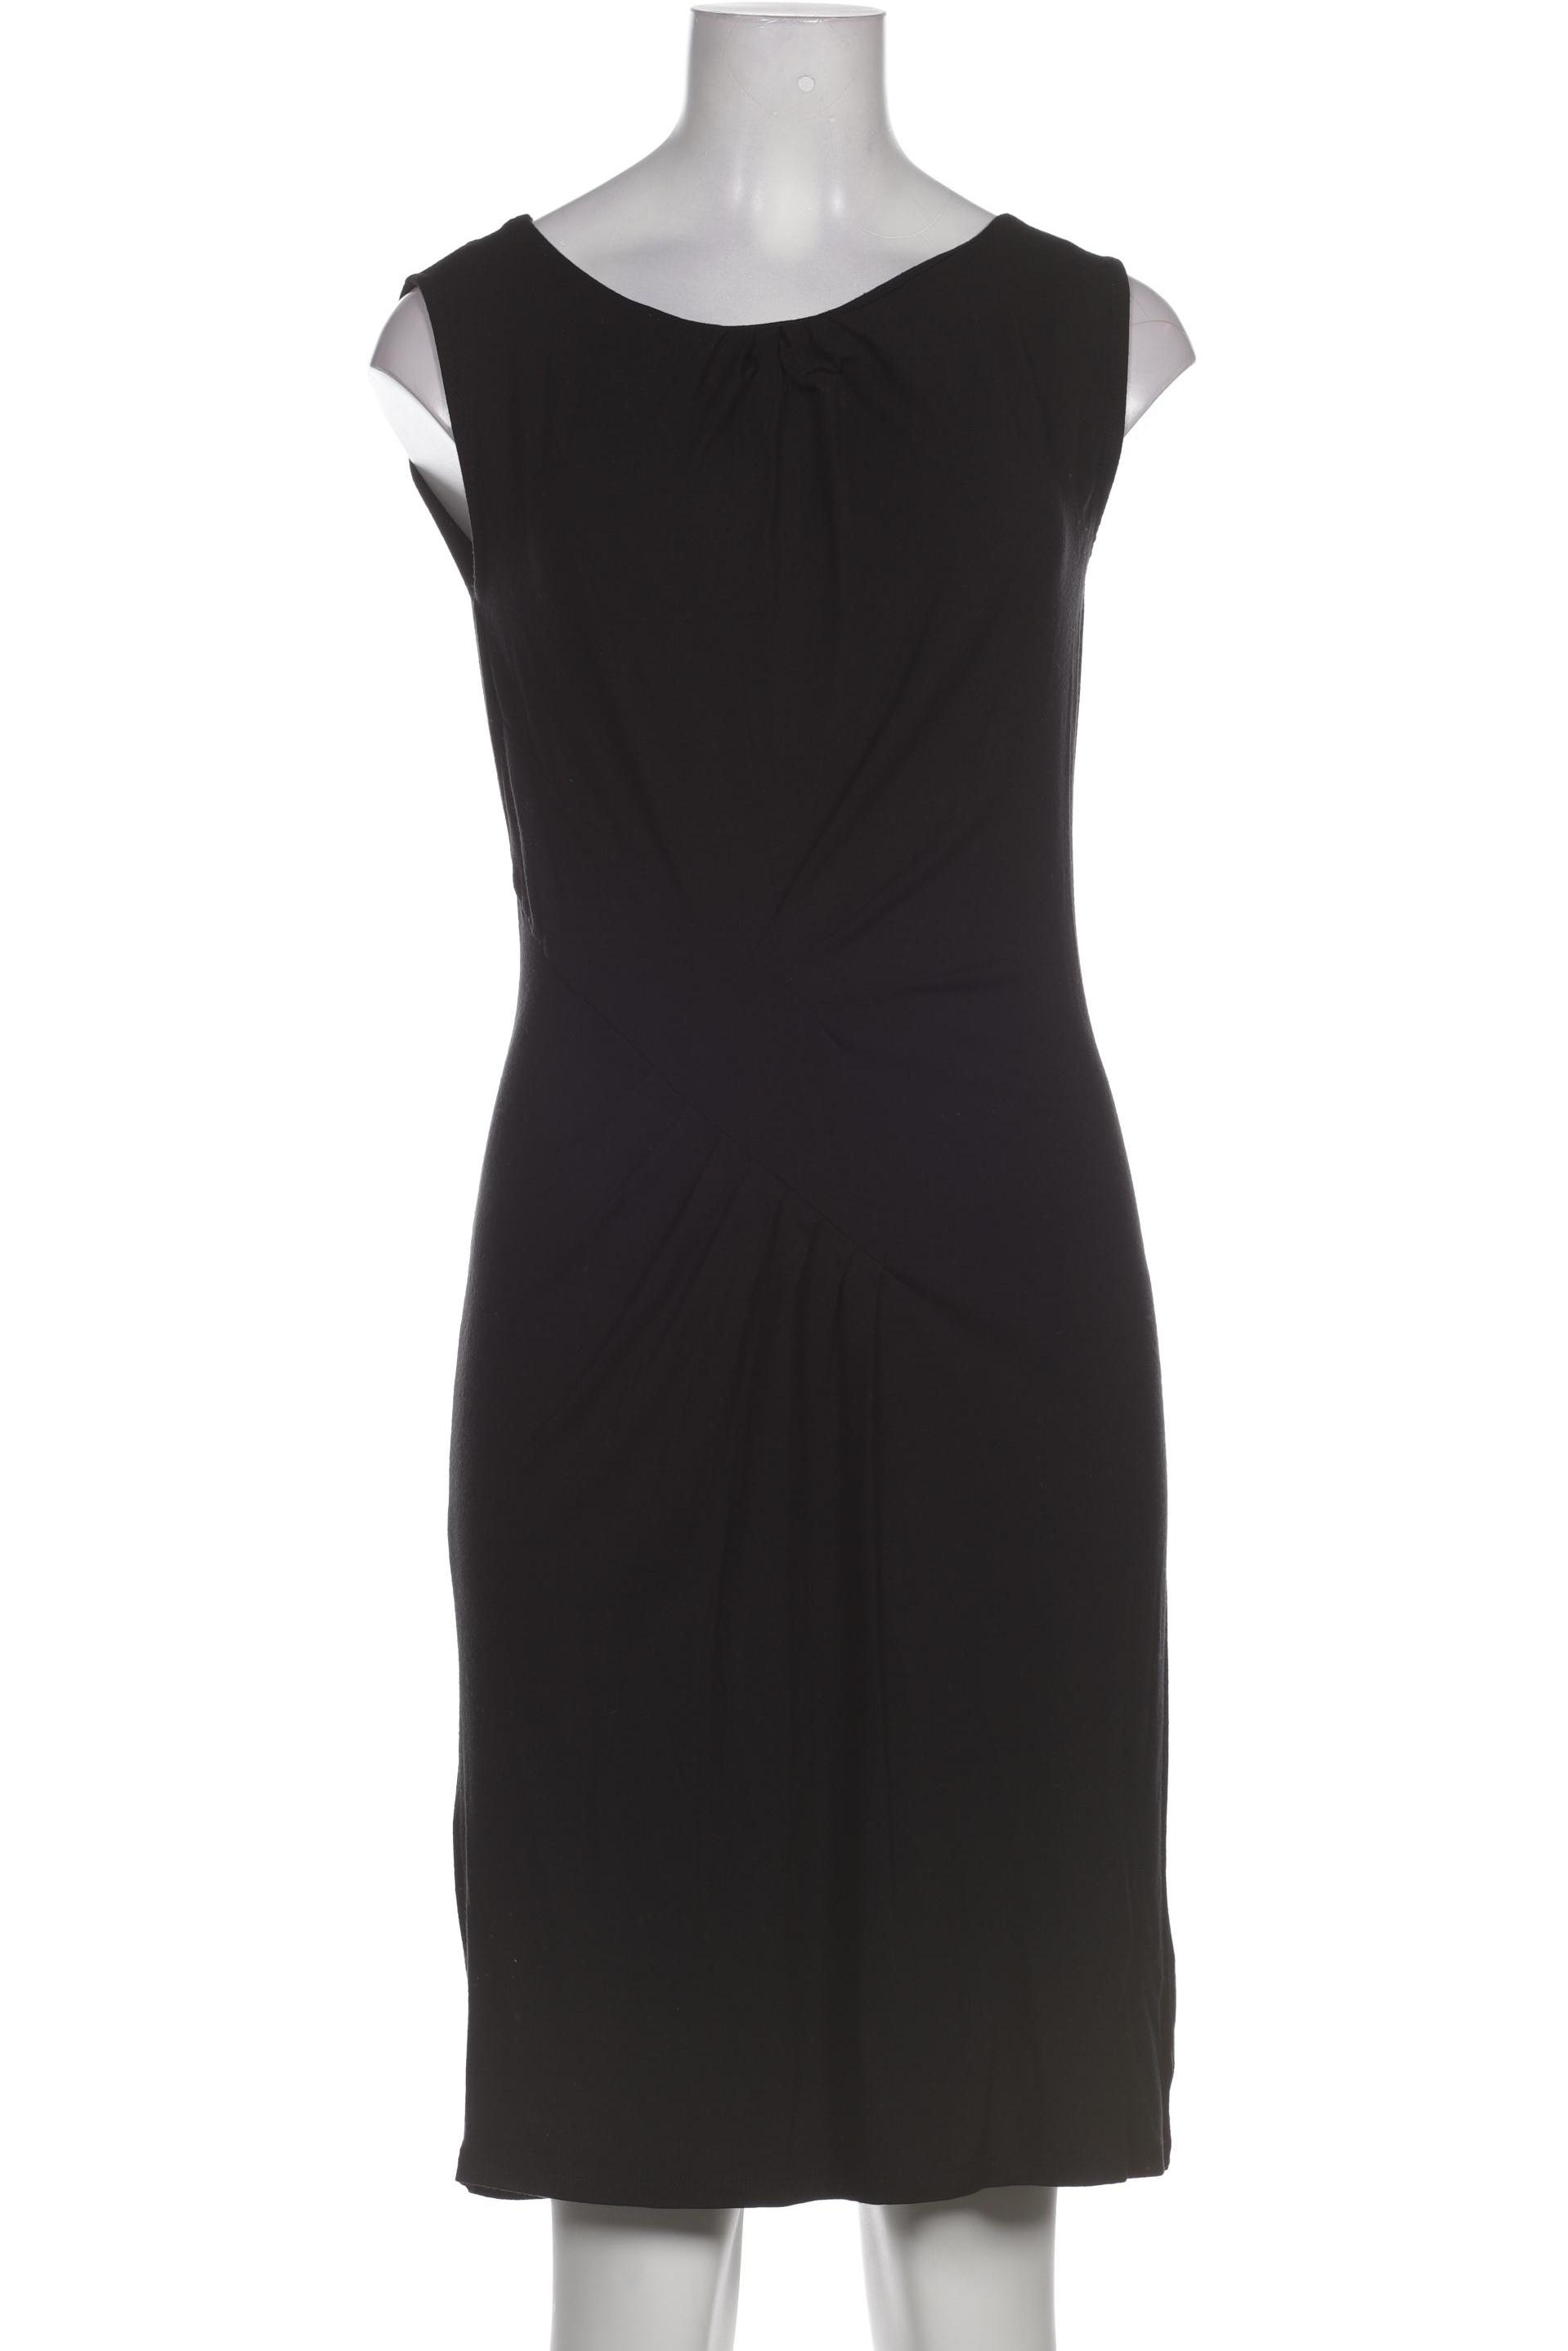 Mexx Damen Kleid, schwarz, Gr. 34 von Mexx